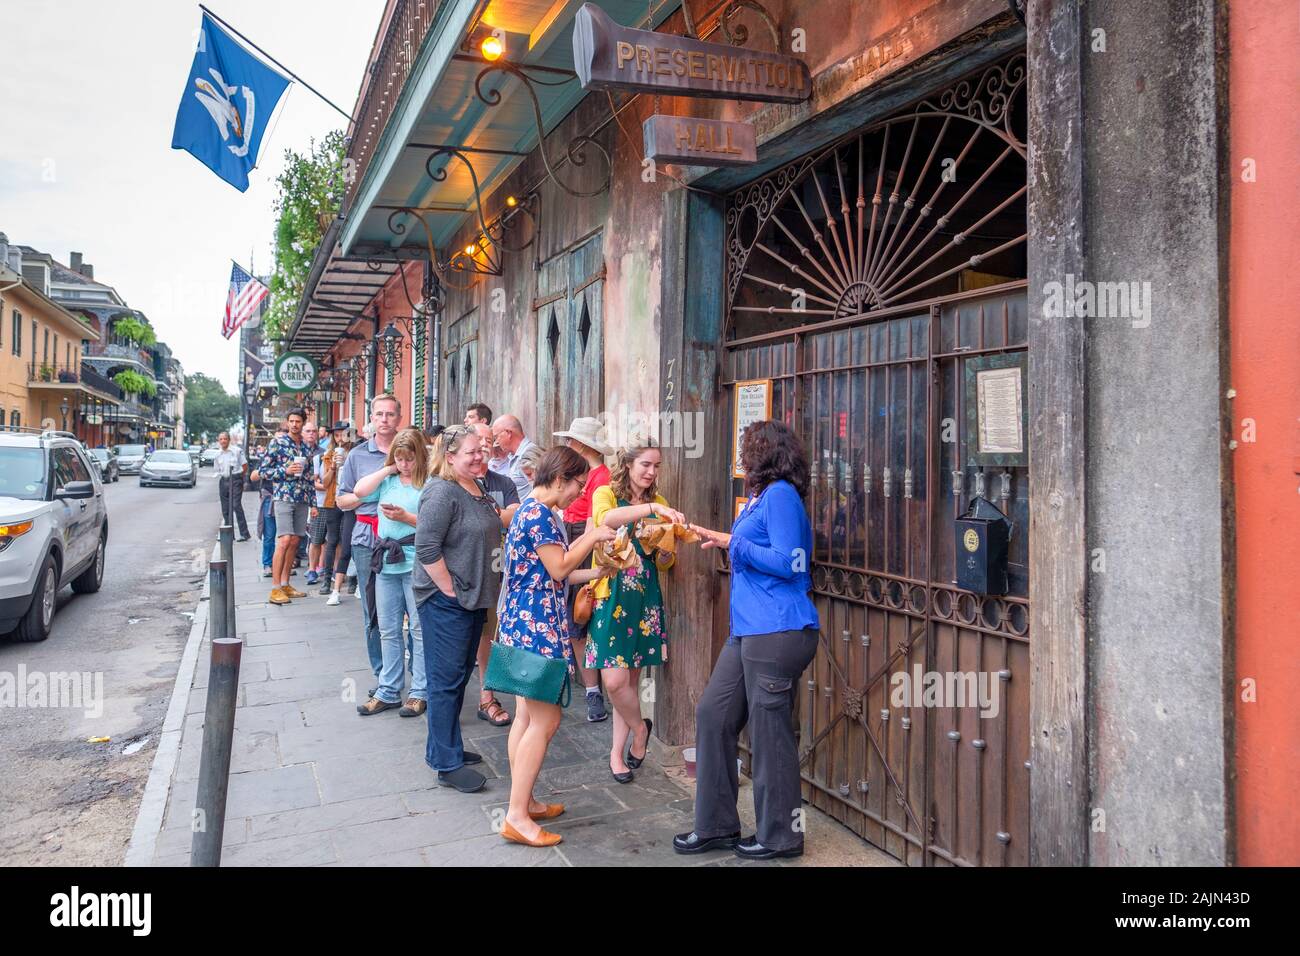 Menschen in Zeile außerhalb Preservation Hall jazz Musik warten, New Orleans, Louisiana, USA Stockfoto